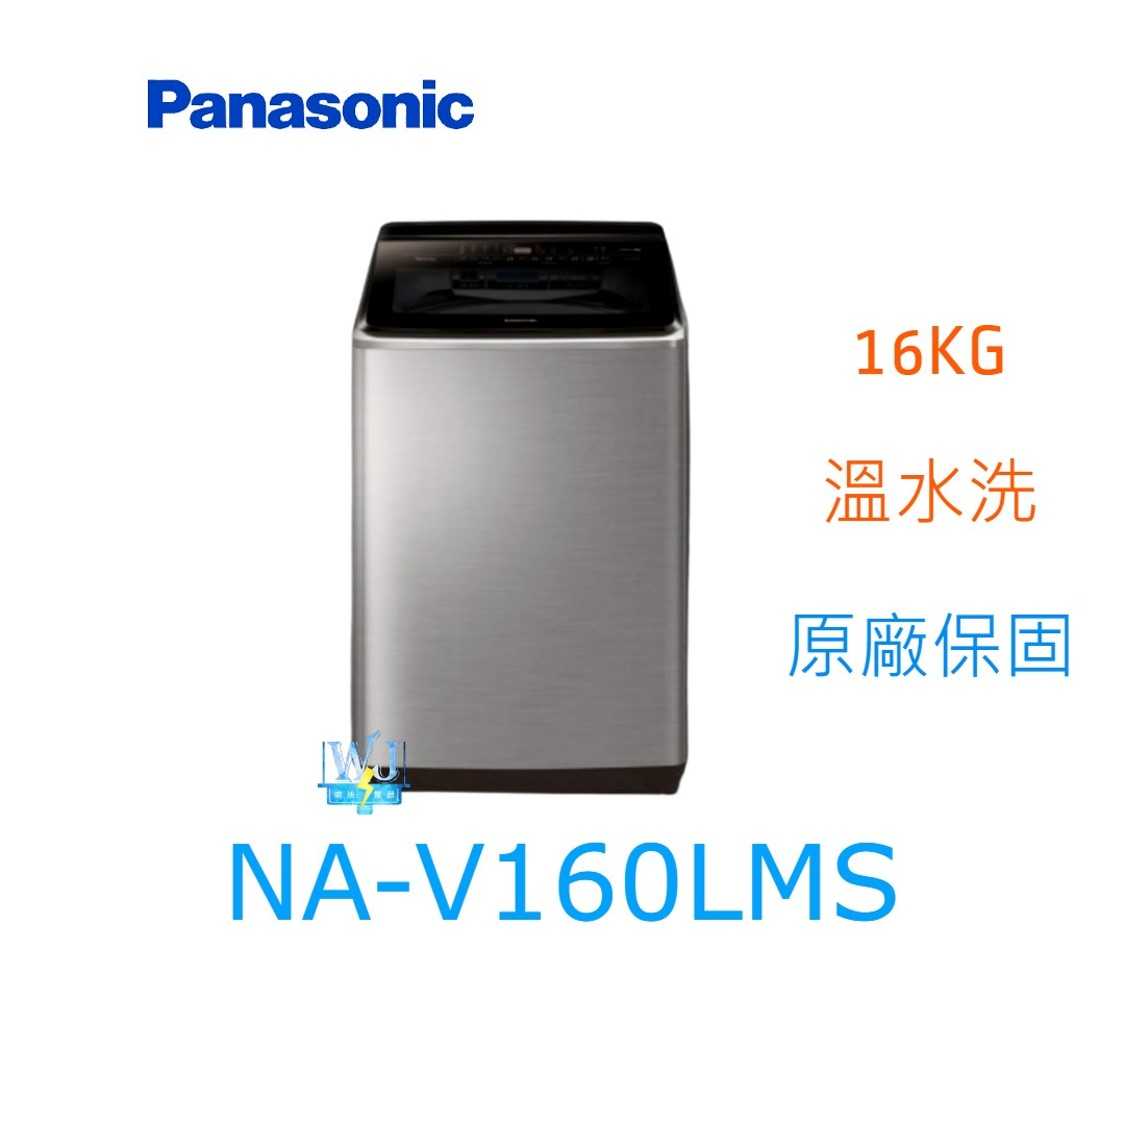 ☆可議價【暐竣電器】Panasonic 國際牌 NA-V160LMS 直立式洗衣機 NAV160LMS 溫水洗 洗衣機